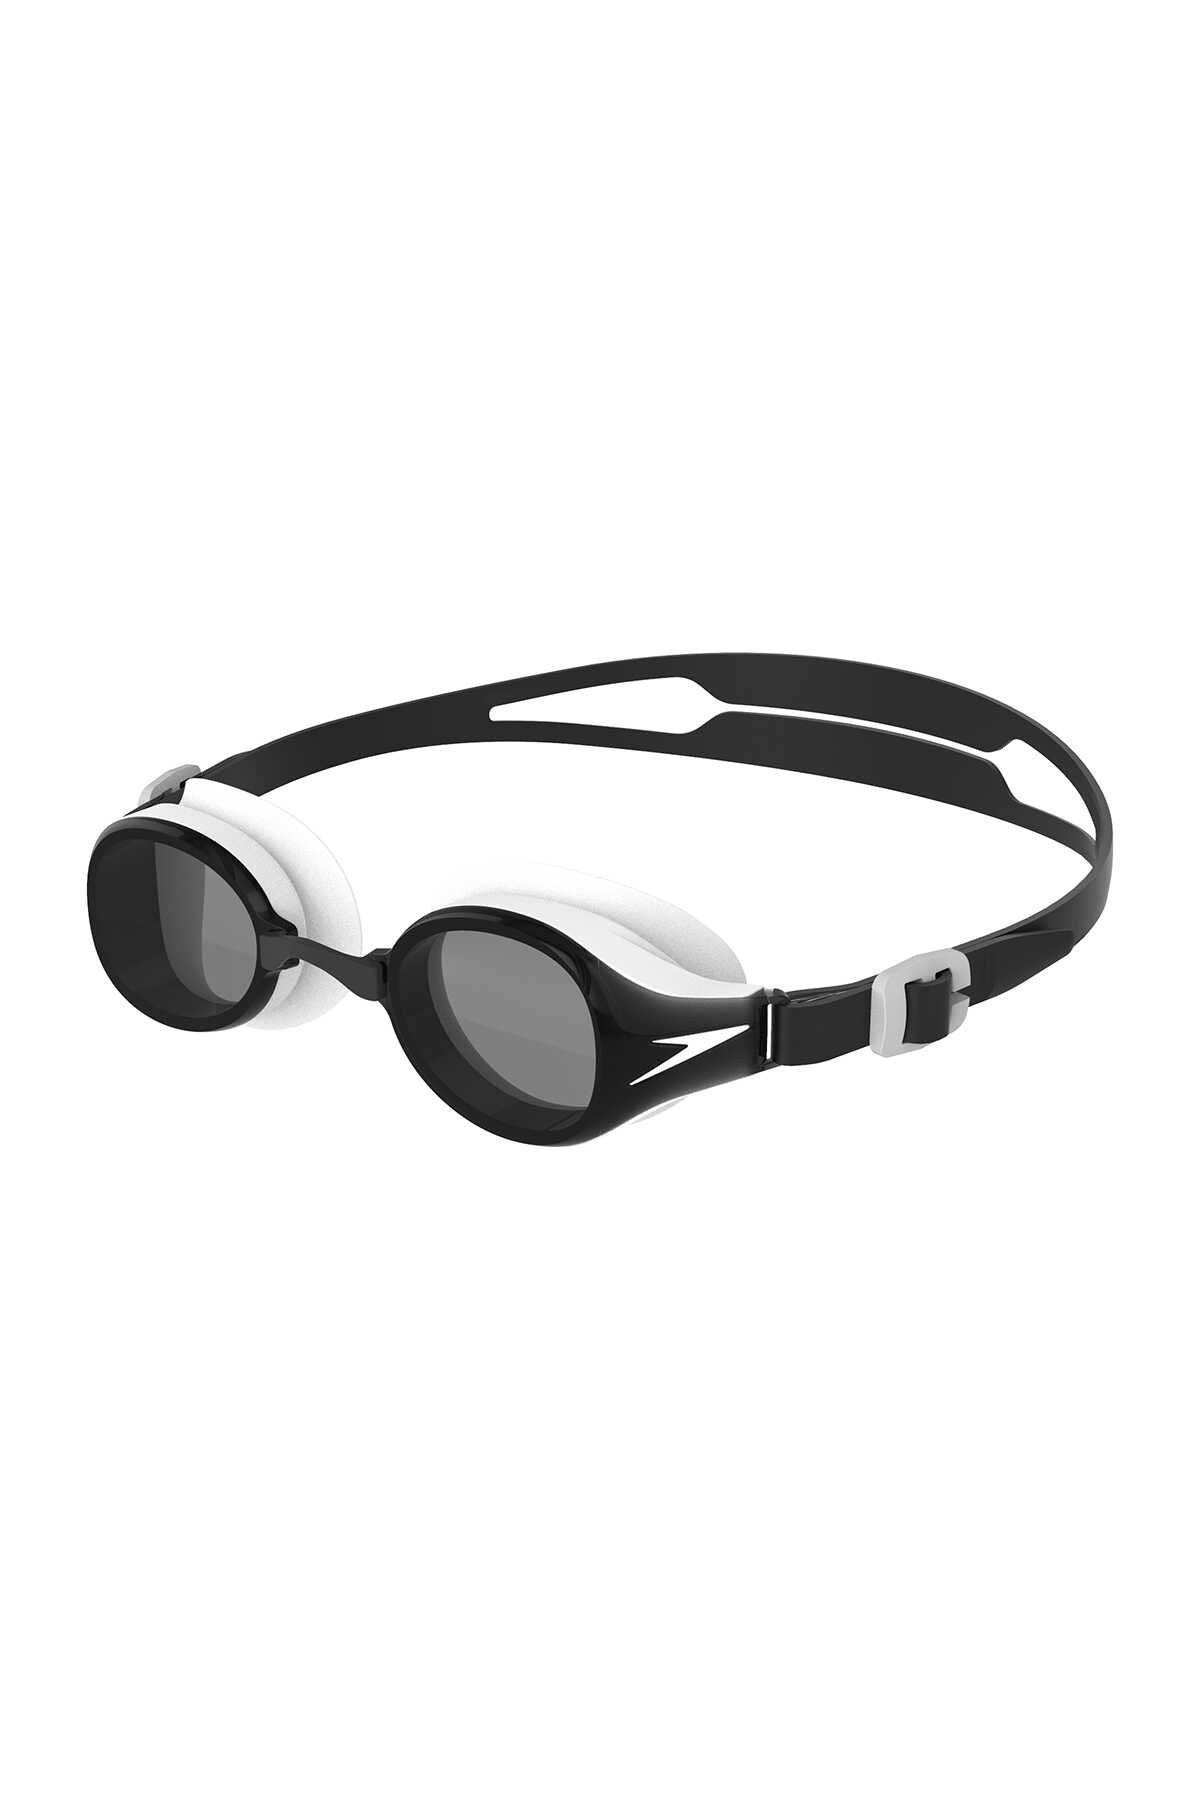 Speedo - Speedo HYDROPURE GOG JU Yüzücü Gözlüğü Siyah / Beyaz